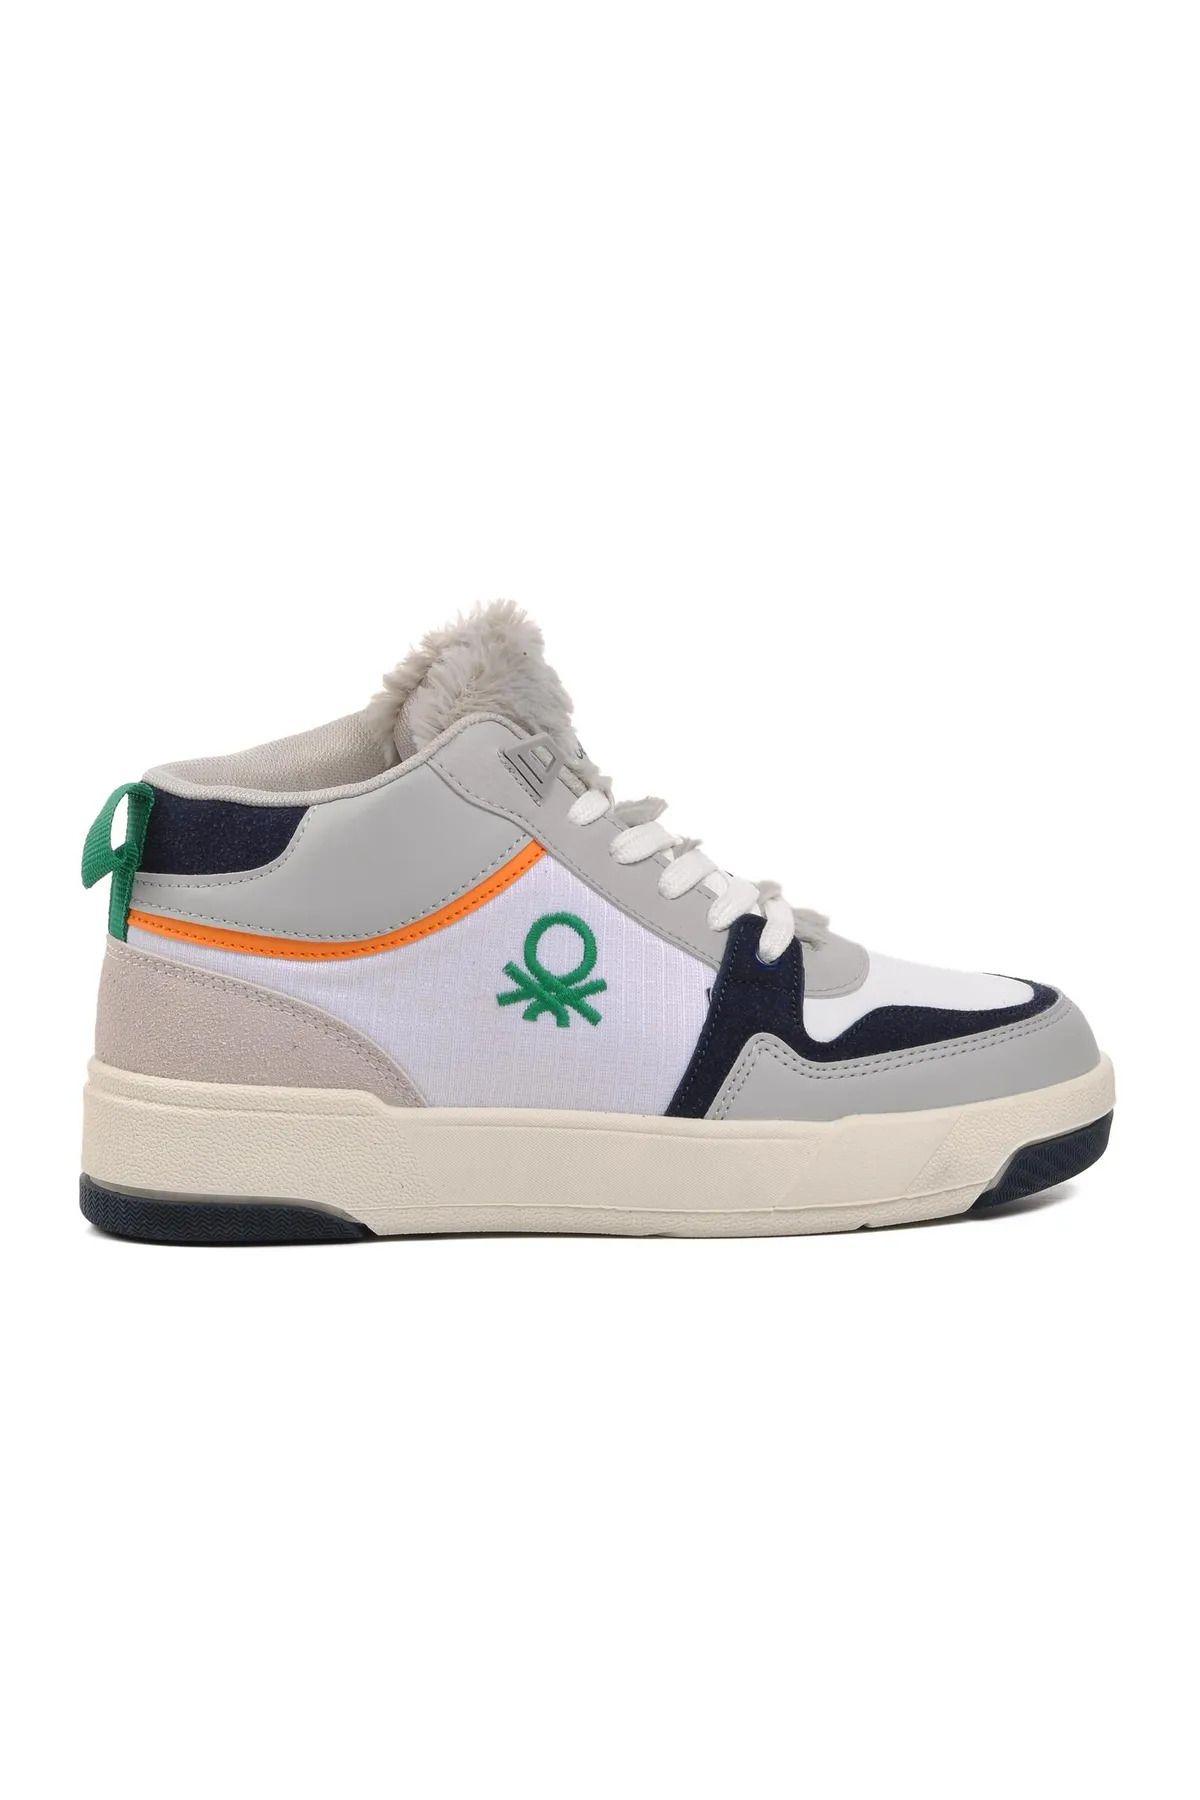 United Colors of Benetton Beyaz Kadın Ayakkabısı